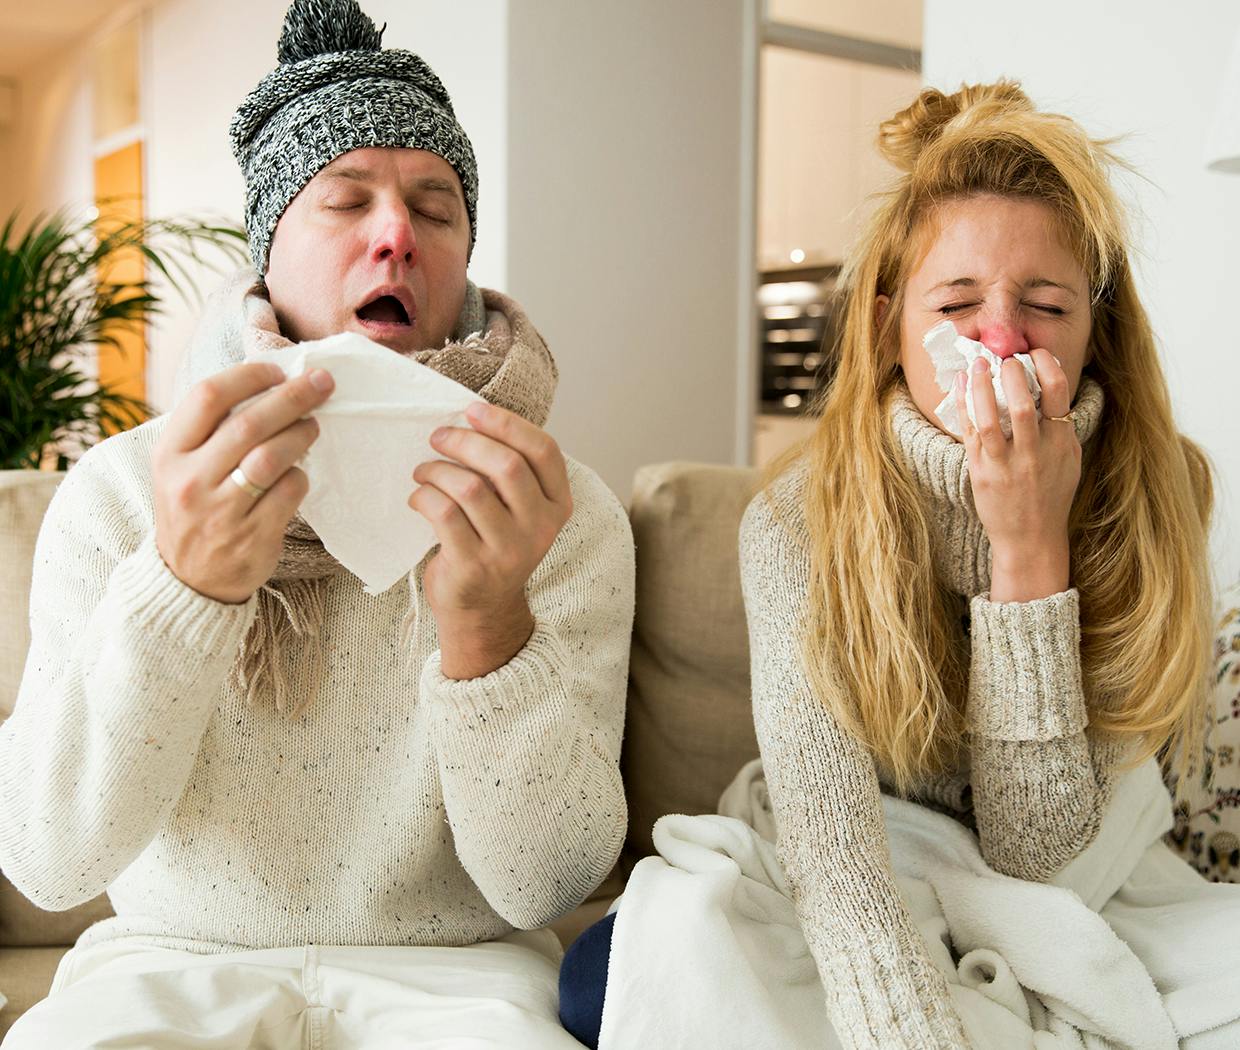 Mand og Kvinde har smittet hinanden med forkølelse